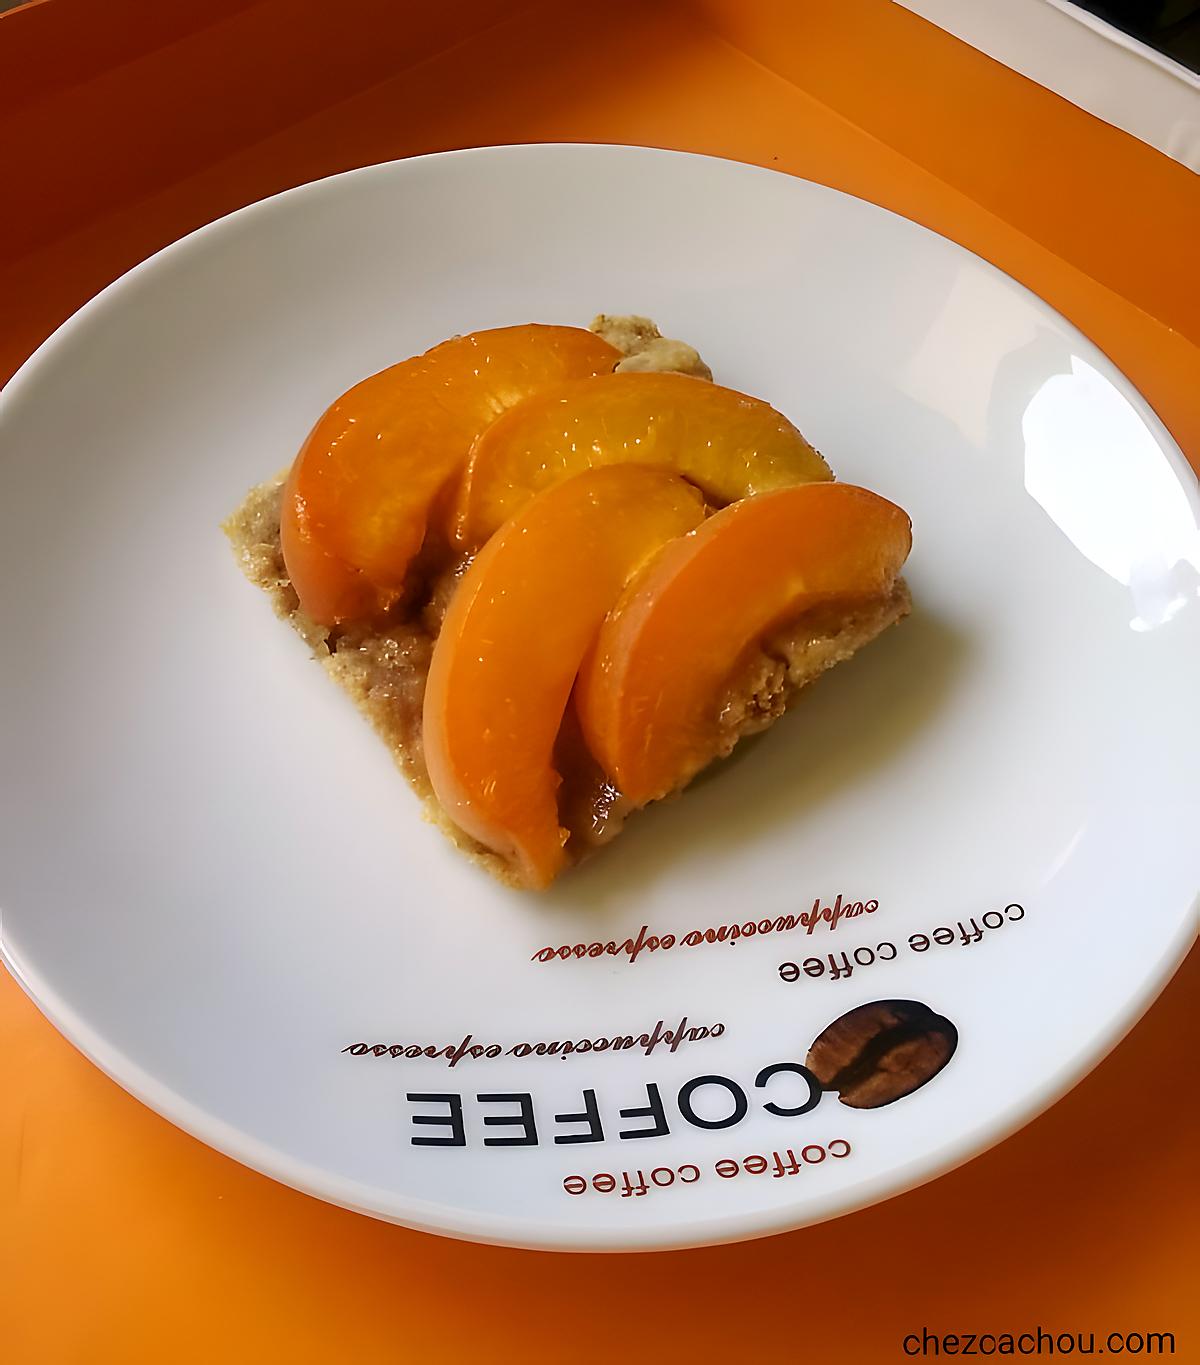 recette Biscuit aux abricots